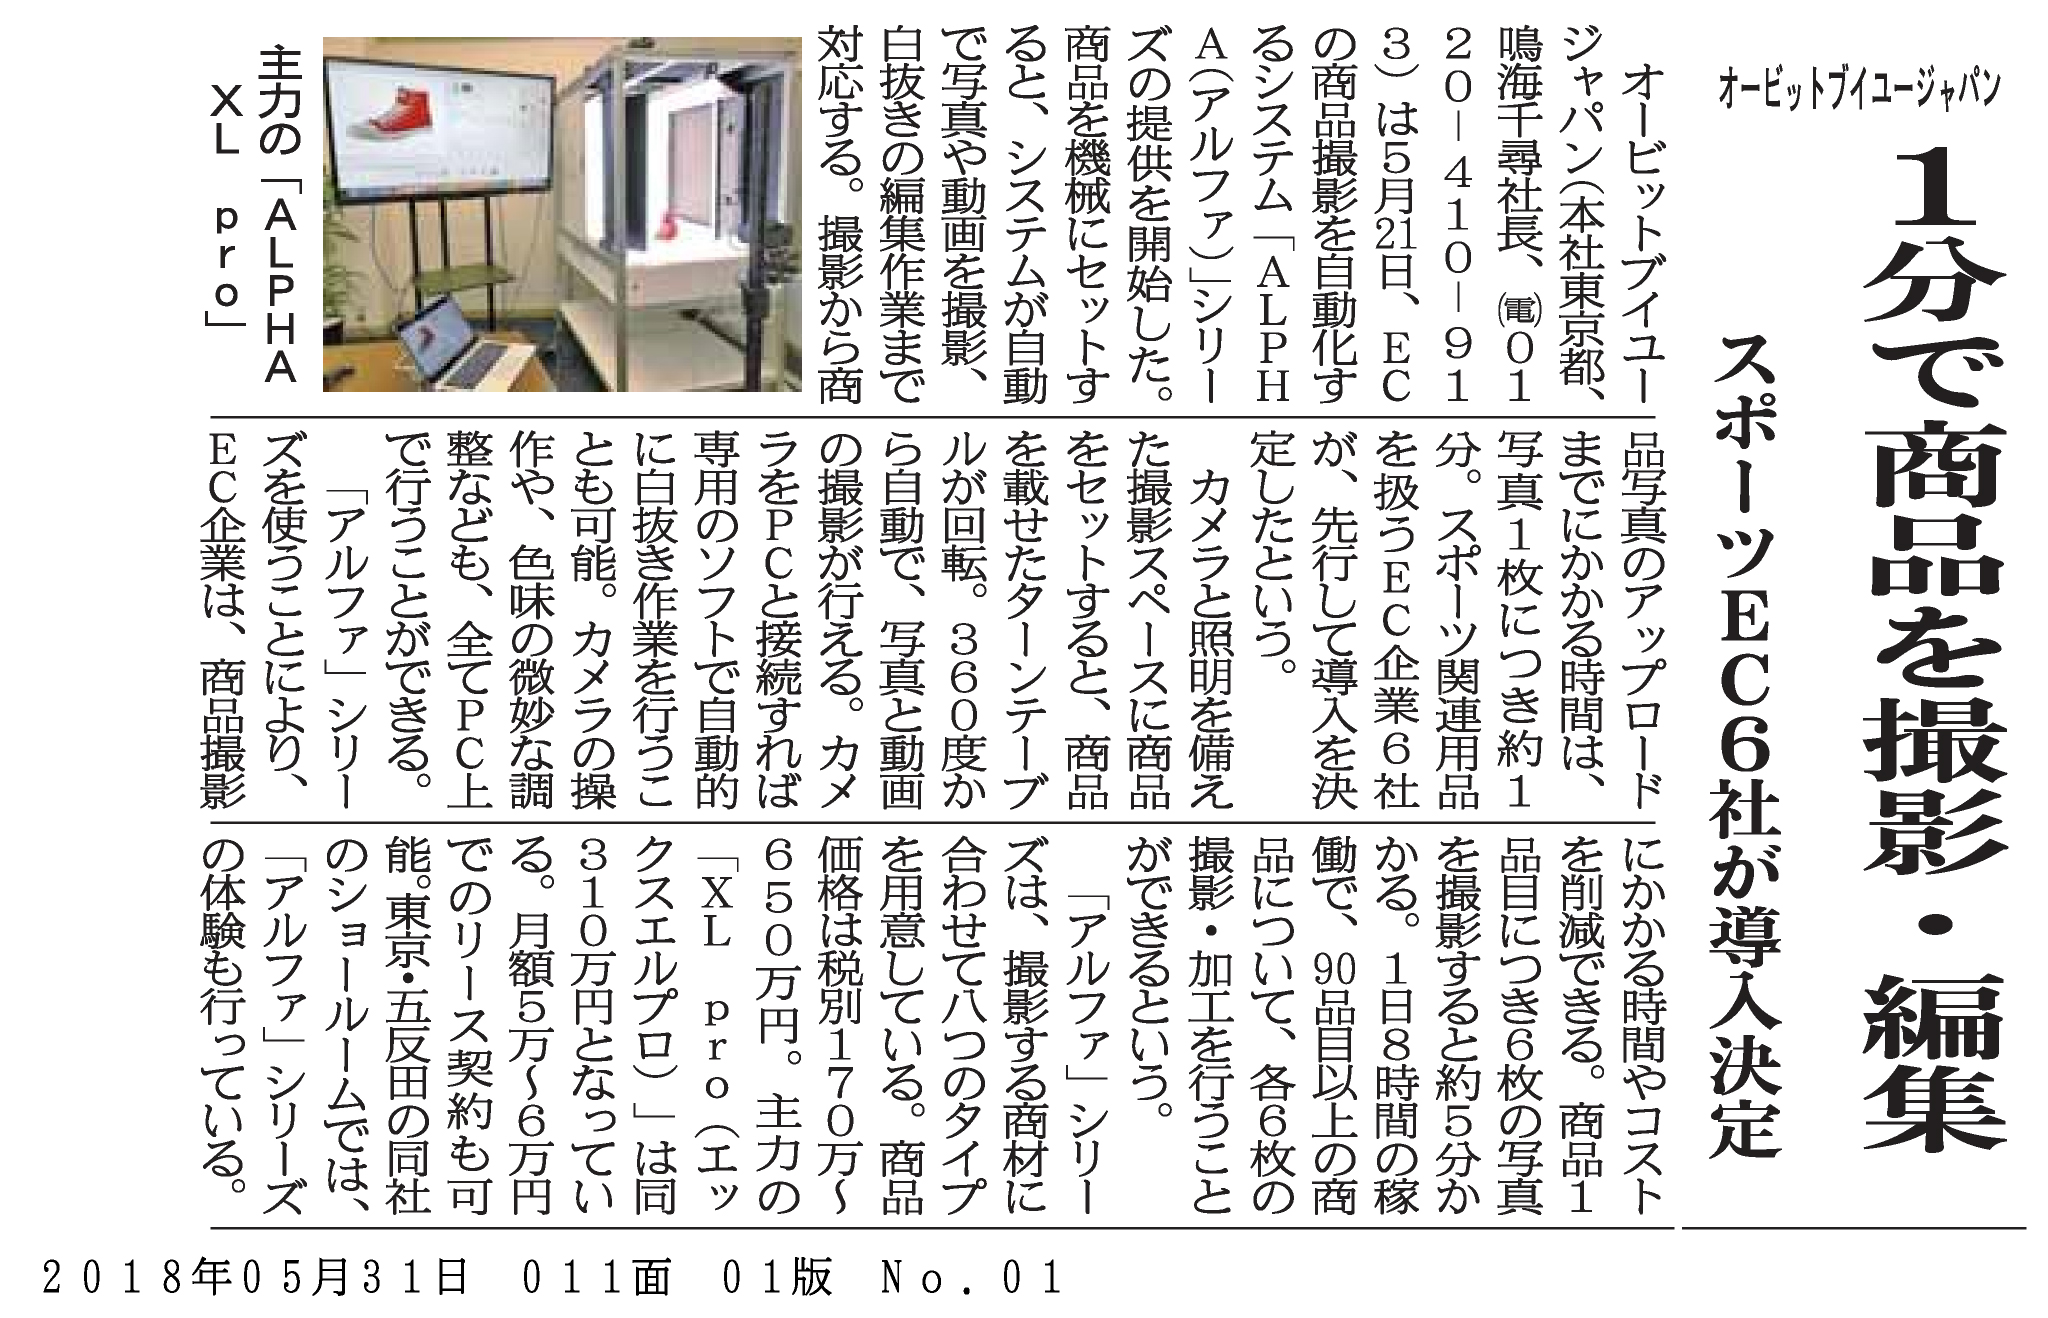 オービットブイユージャパンの商品撮影システムが日本経済ネット新聞に掲載されました